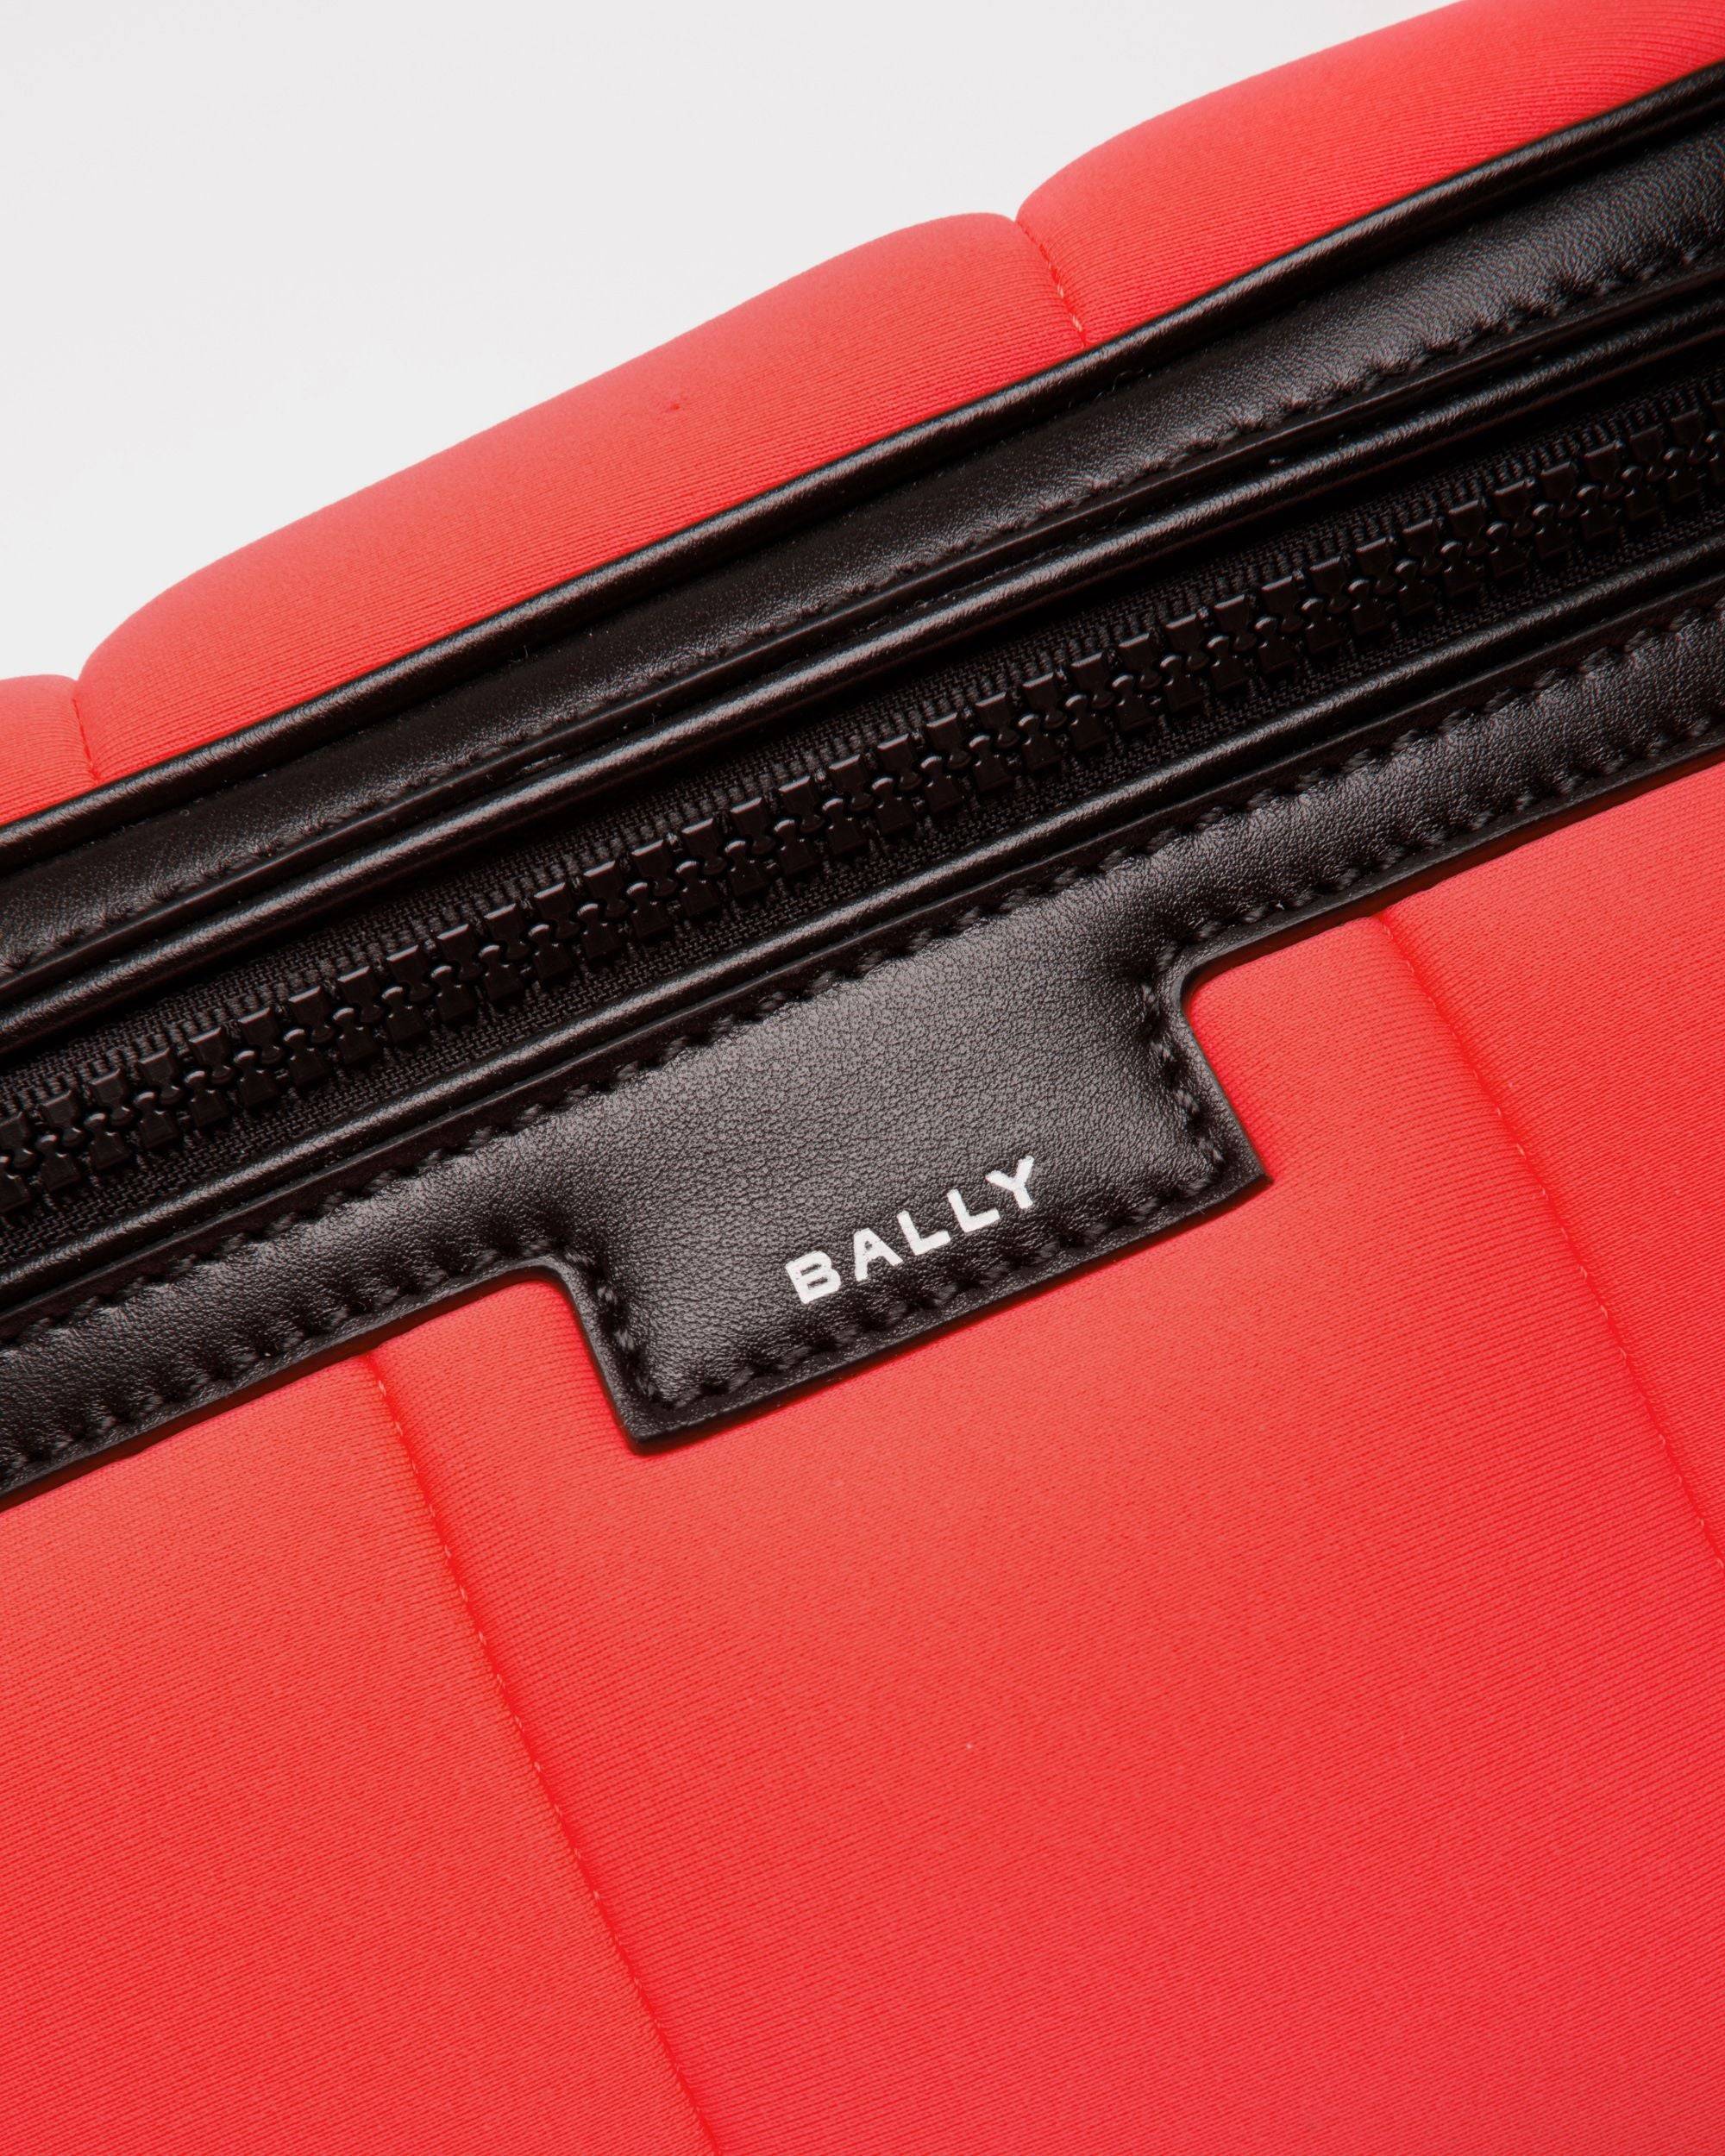 Mountain | Men's Belt Bag in Red Neoprene | Bally | Still Life Detail